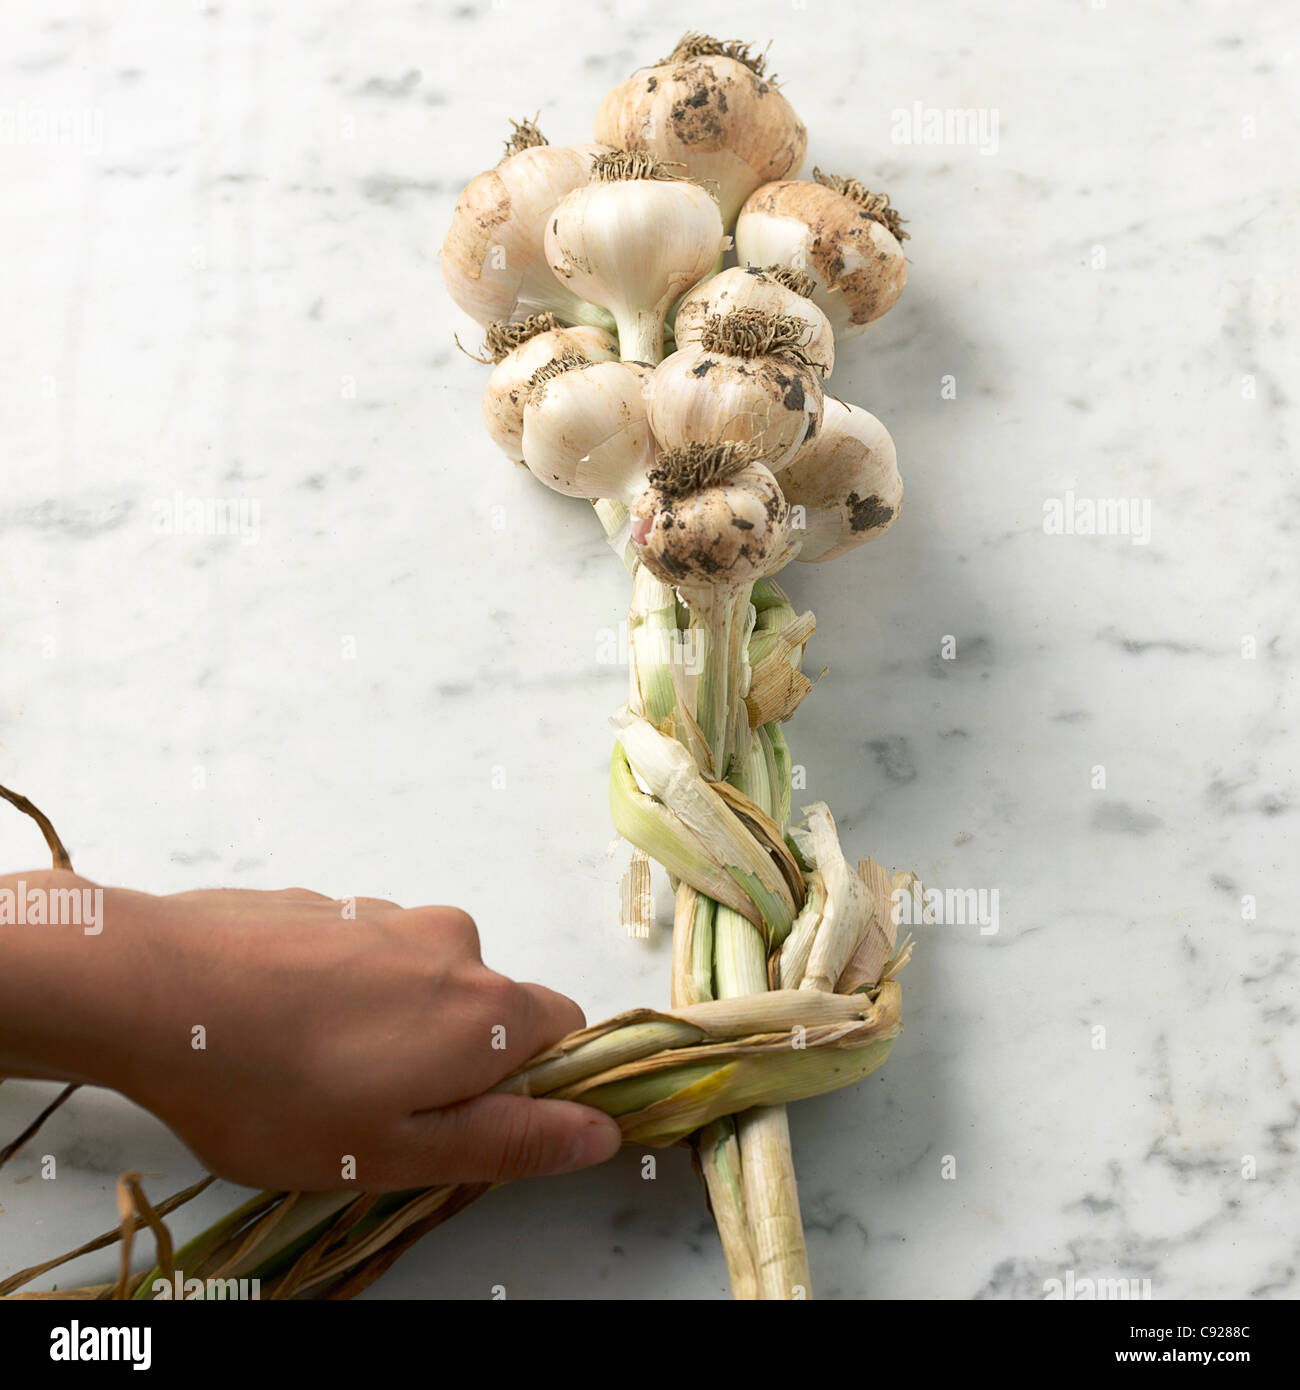 Making garlic plait Stock Photo